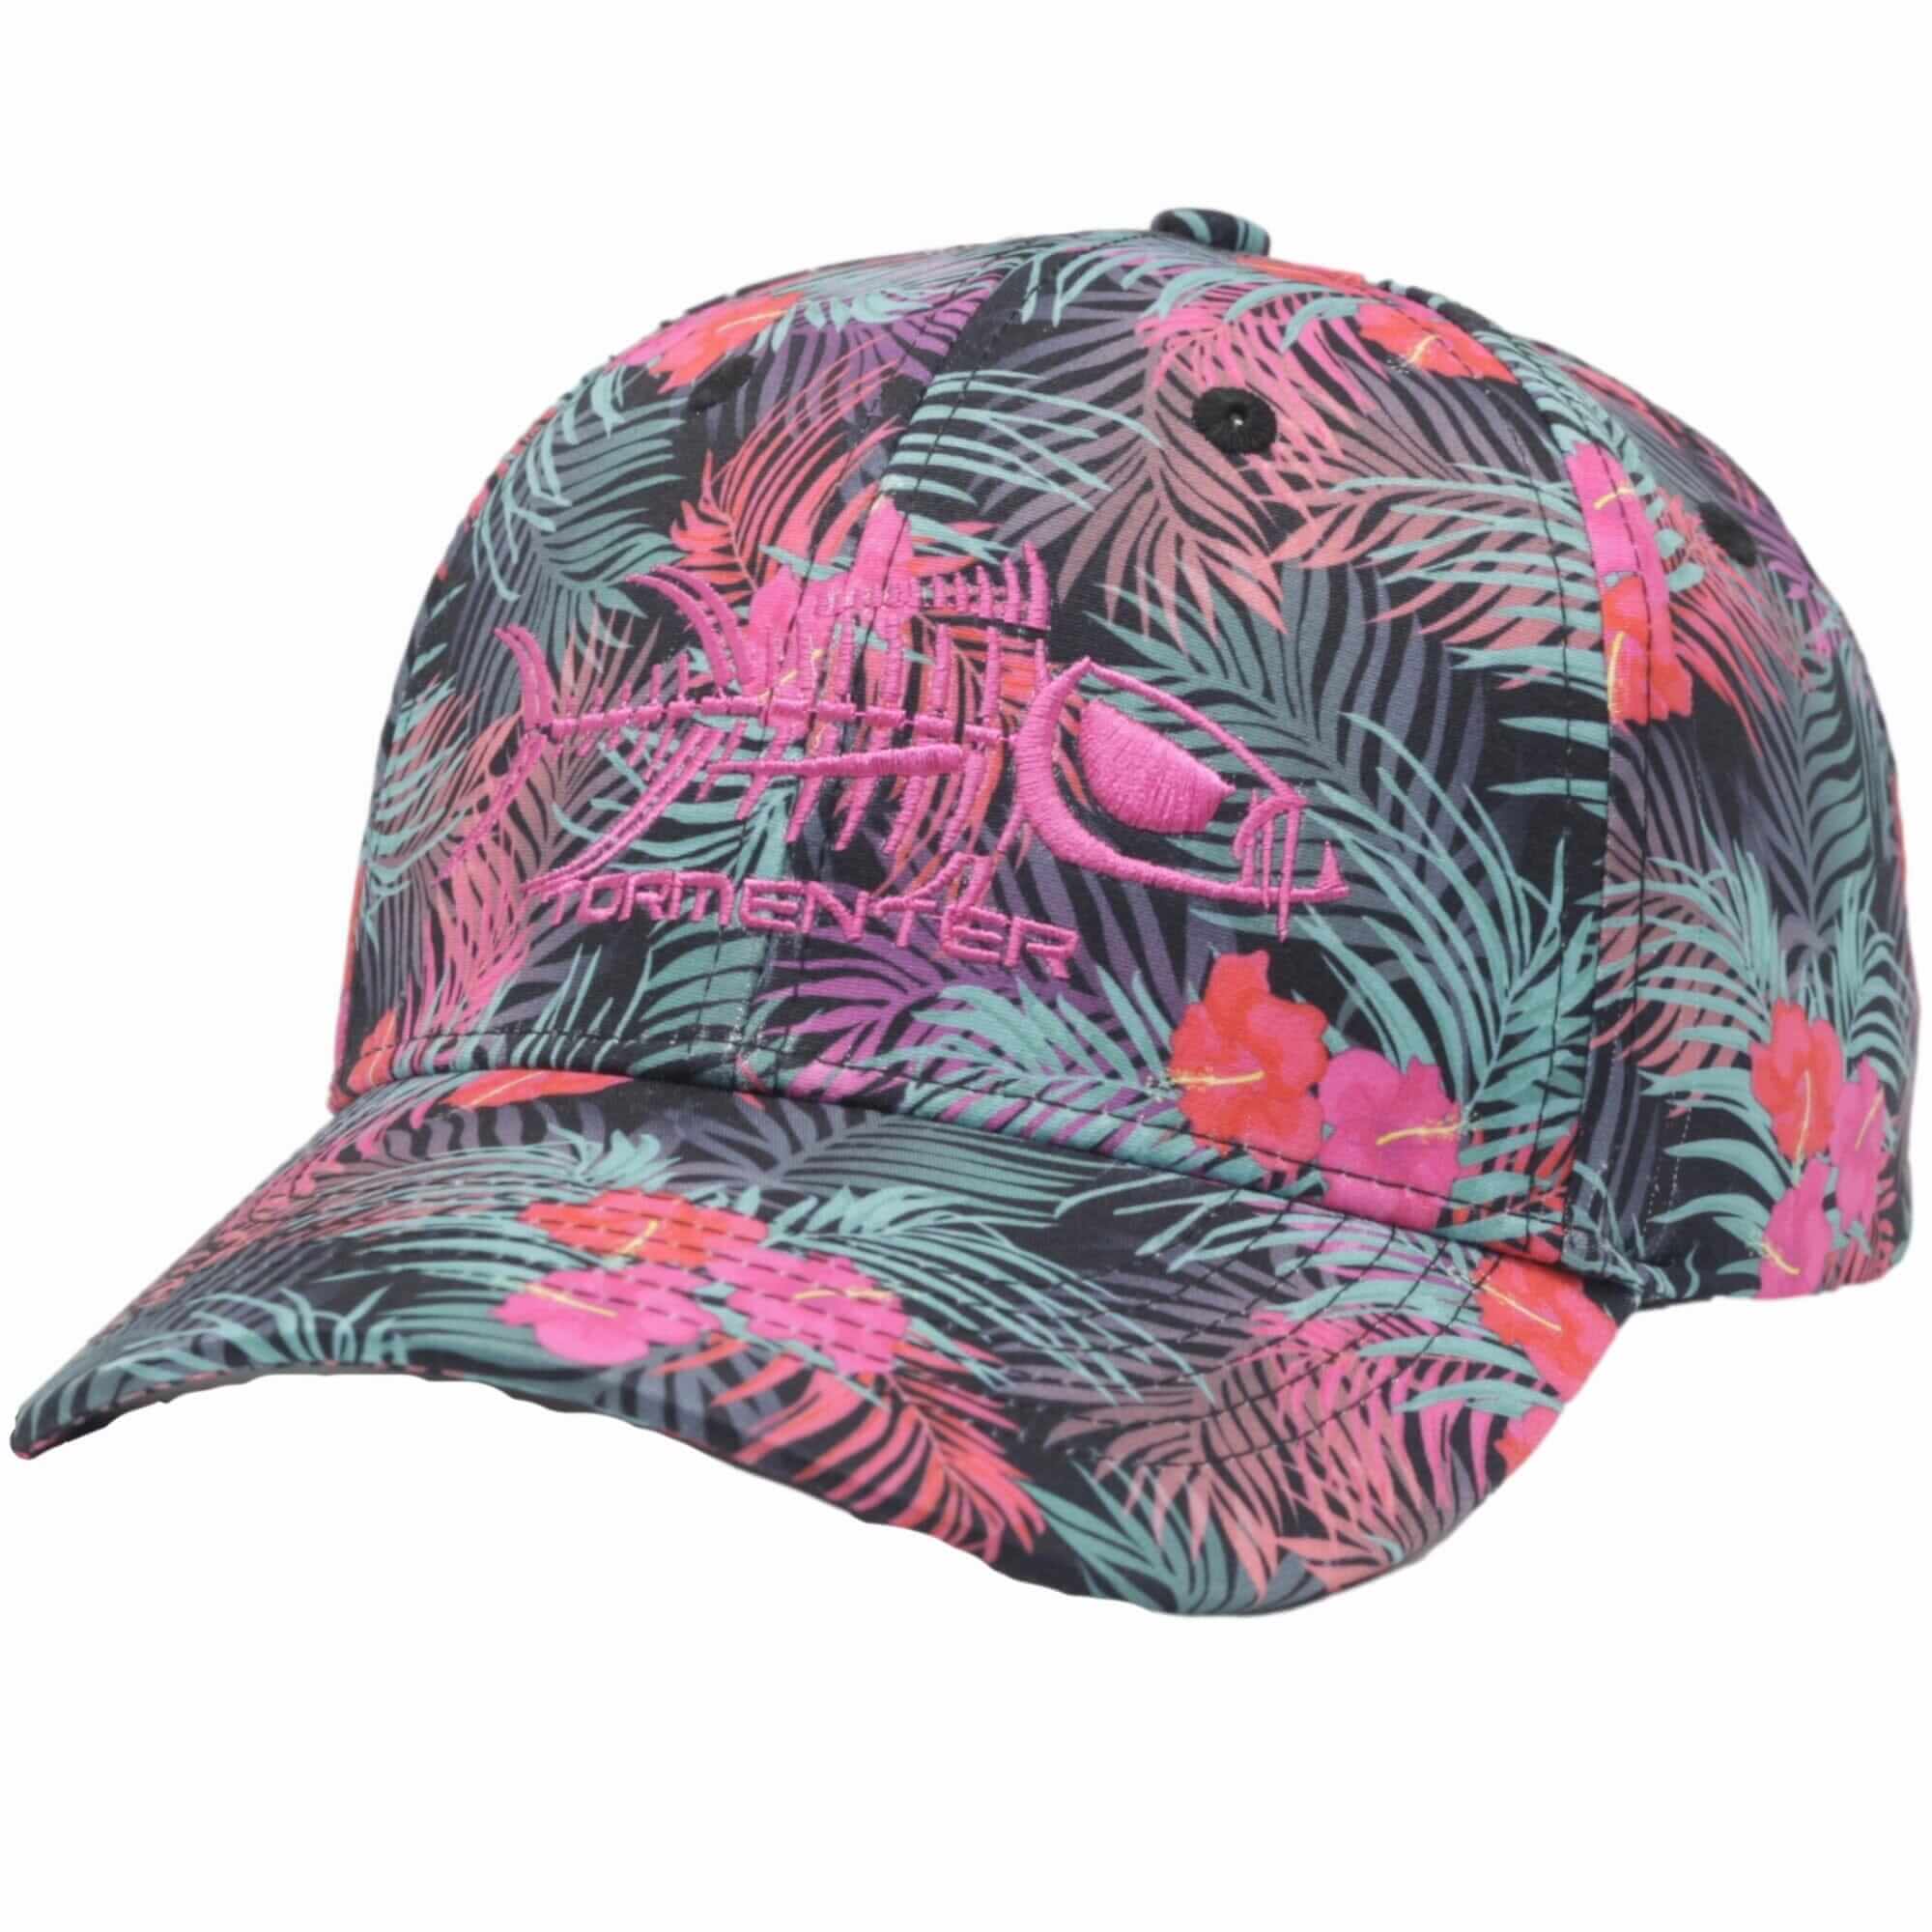 Shop Fishing Hats & Headwear